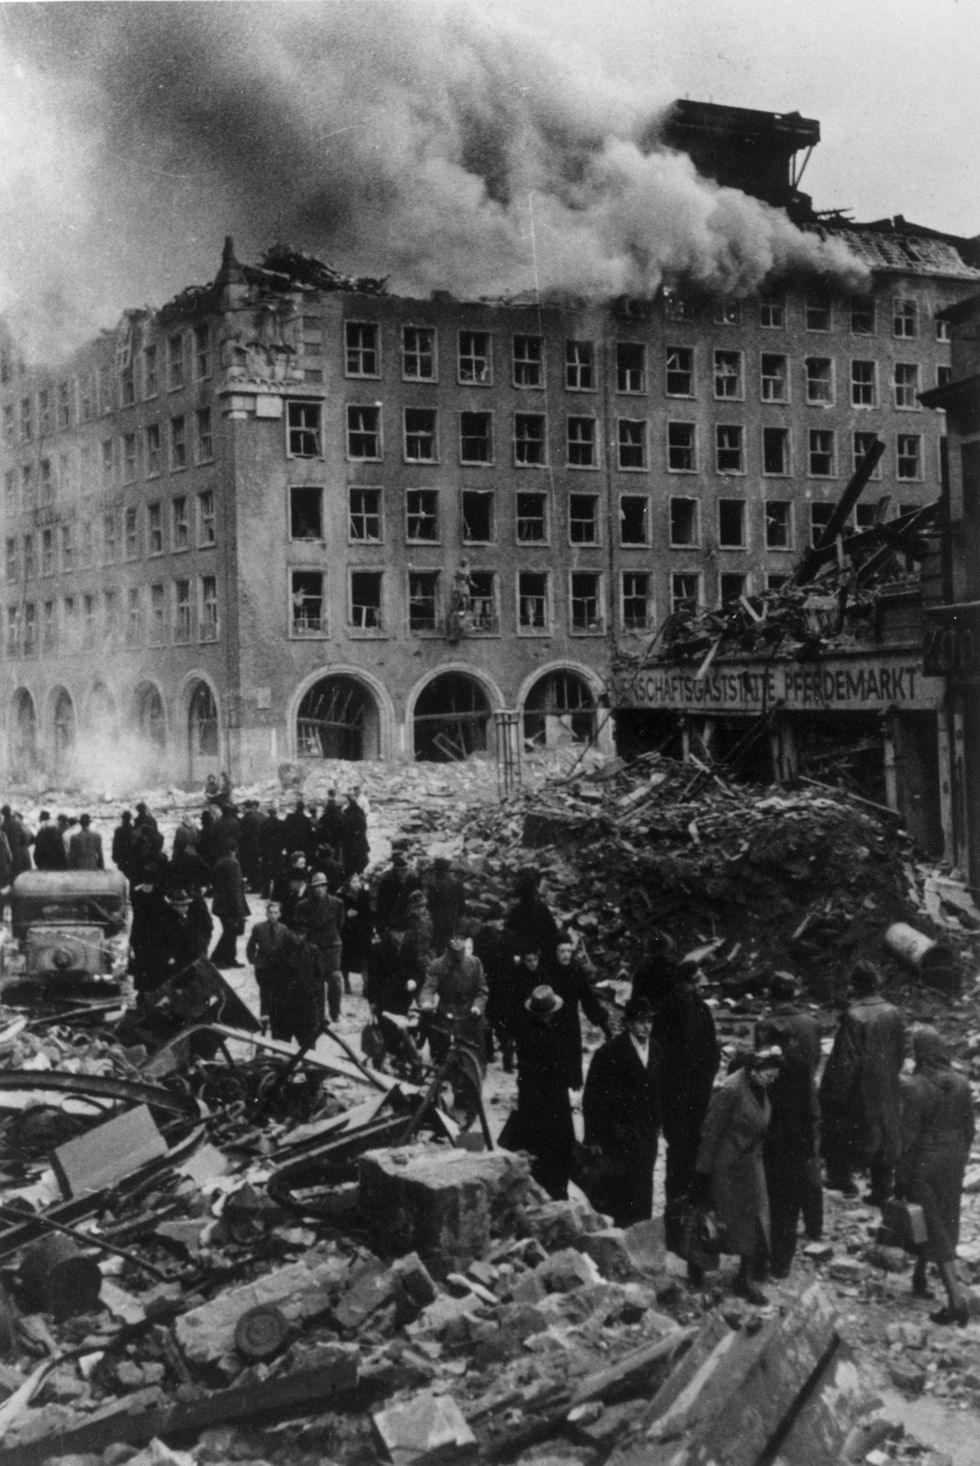 Britse en Amerikaanse planners hadden zich op de aanval op Hamburg voorbereid door de bouwwijze van Duitse woningen te bestuderen en ervoor te zorgen dat de bommen zoveel mogelijk schade zouden aanrichten De stad werd grotendeels met de grond gelijkgemaakt